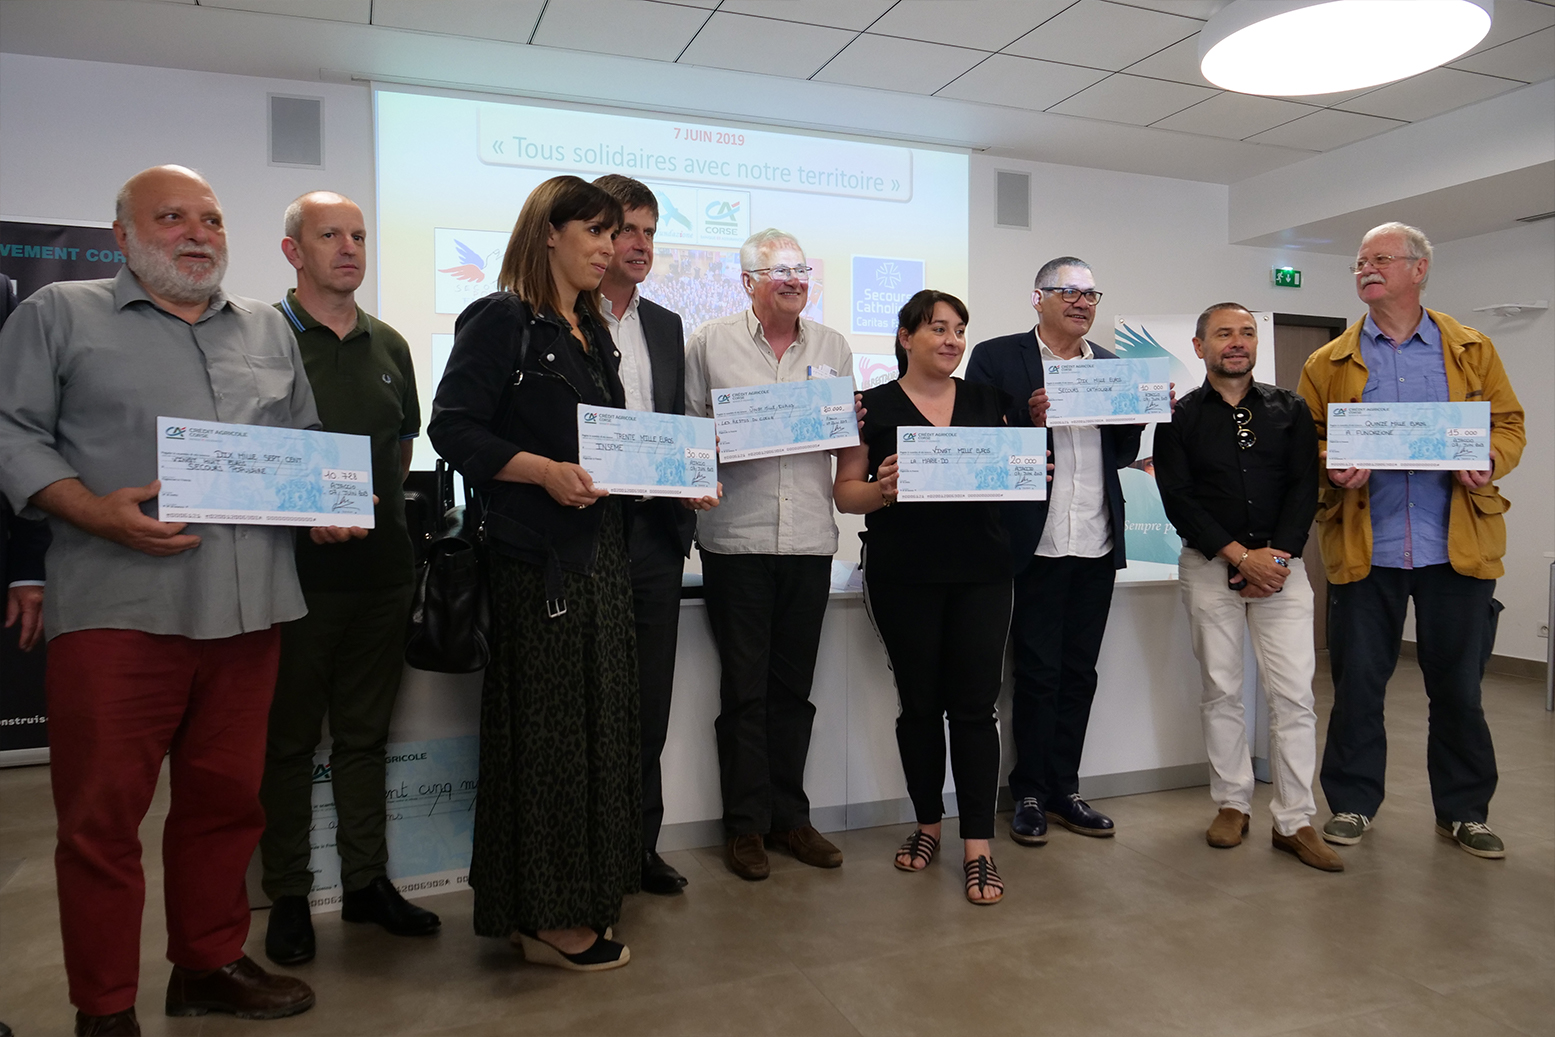 “Tous solidaires avec notre territoire” : les employés du Crédit Agricole de Corse récoltent 105 000 euros pour six associations corses